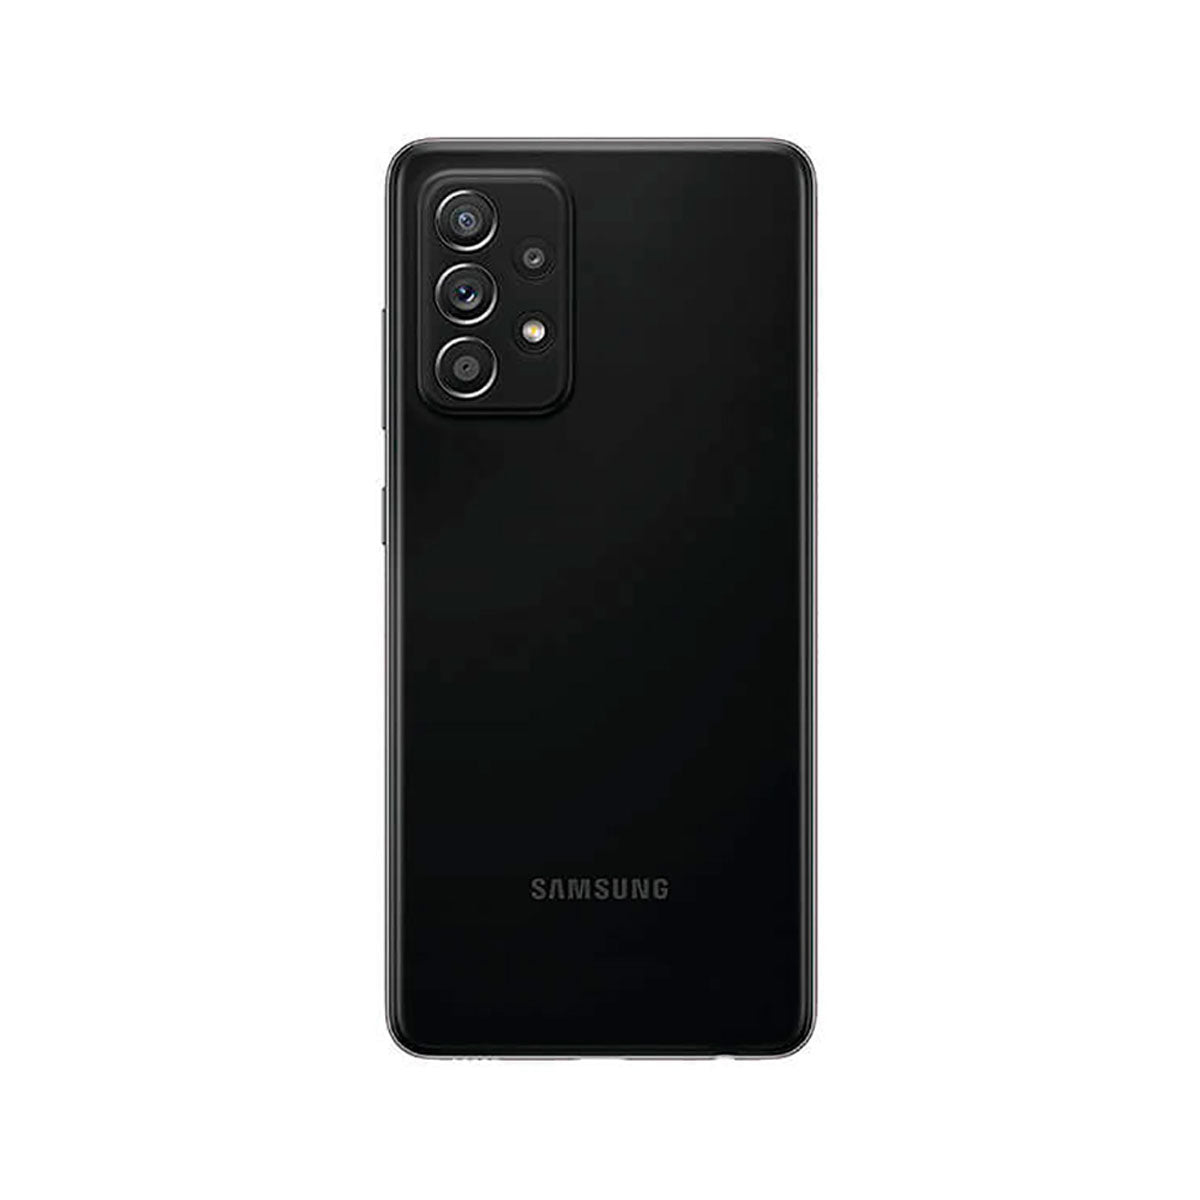 Samsung Galaxy A52s 5G 6GB/128GB Black (Awesome Black) Dual SIM SM-A528B Enterprise Edition